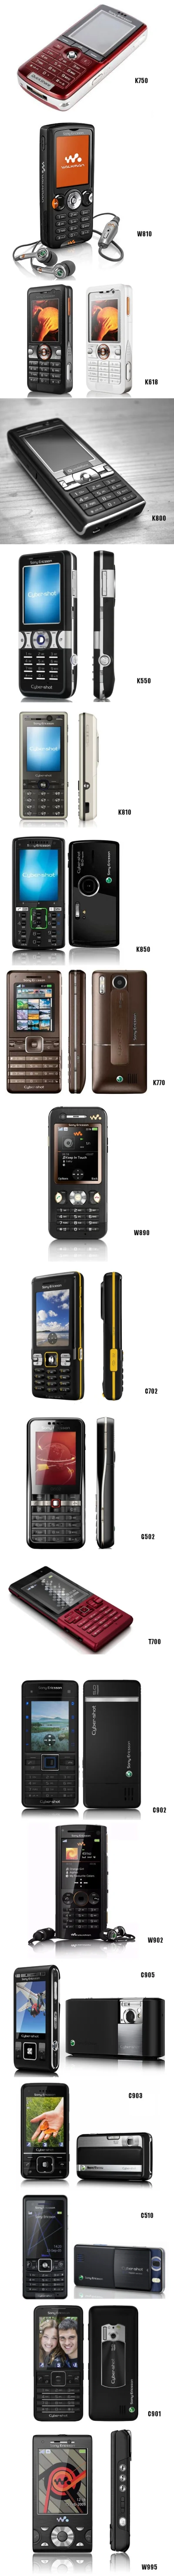 rukh - Najlepsze telefony jakiekolwiek kiedy powstały!! ᕦ(òóˇ)ᕤ
#sonyericsson #telef...